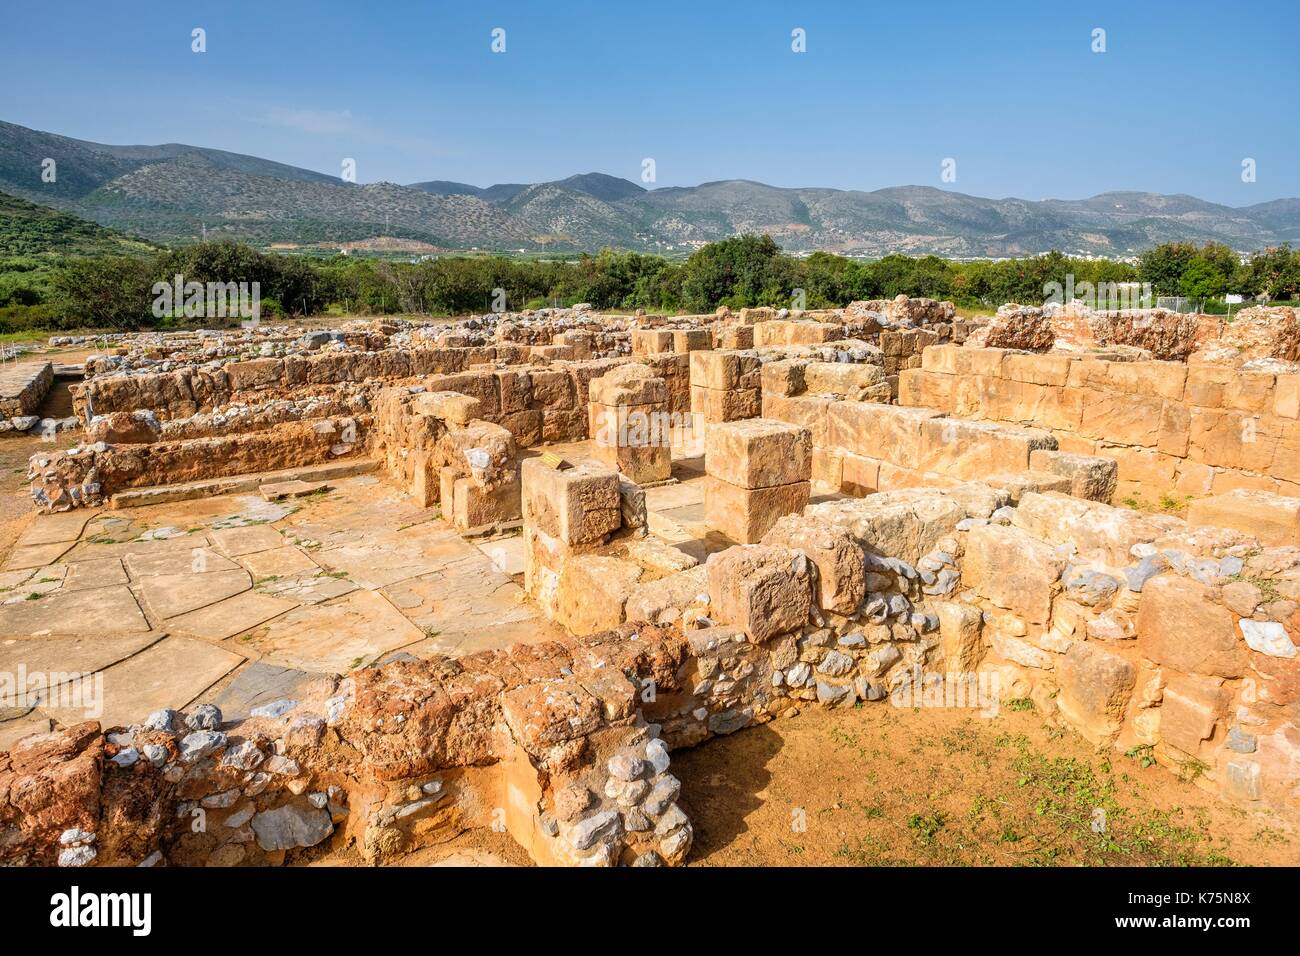 La Grèce, la Crète, Héraklion, district de Malia, site archéologique du palais minoen de Malia Banque D'Images